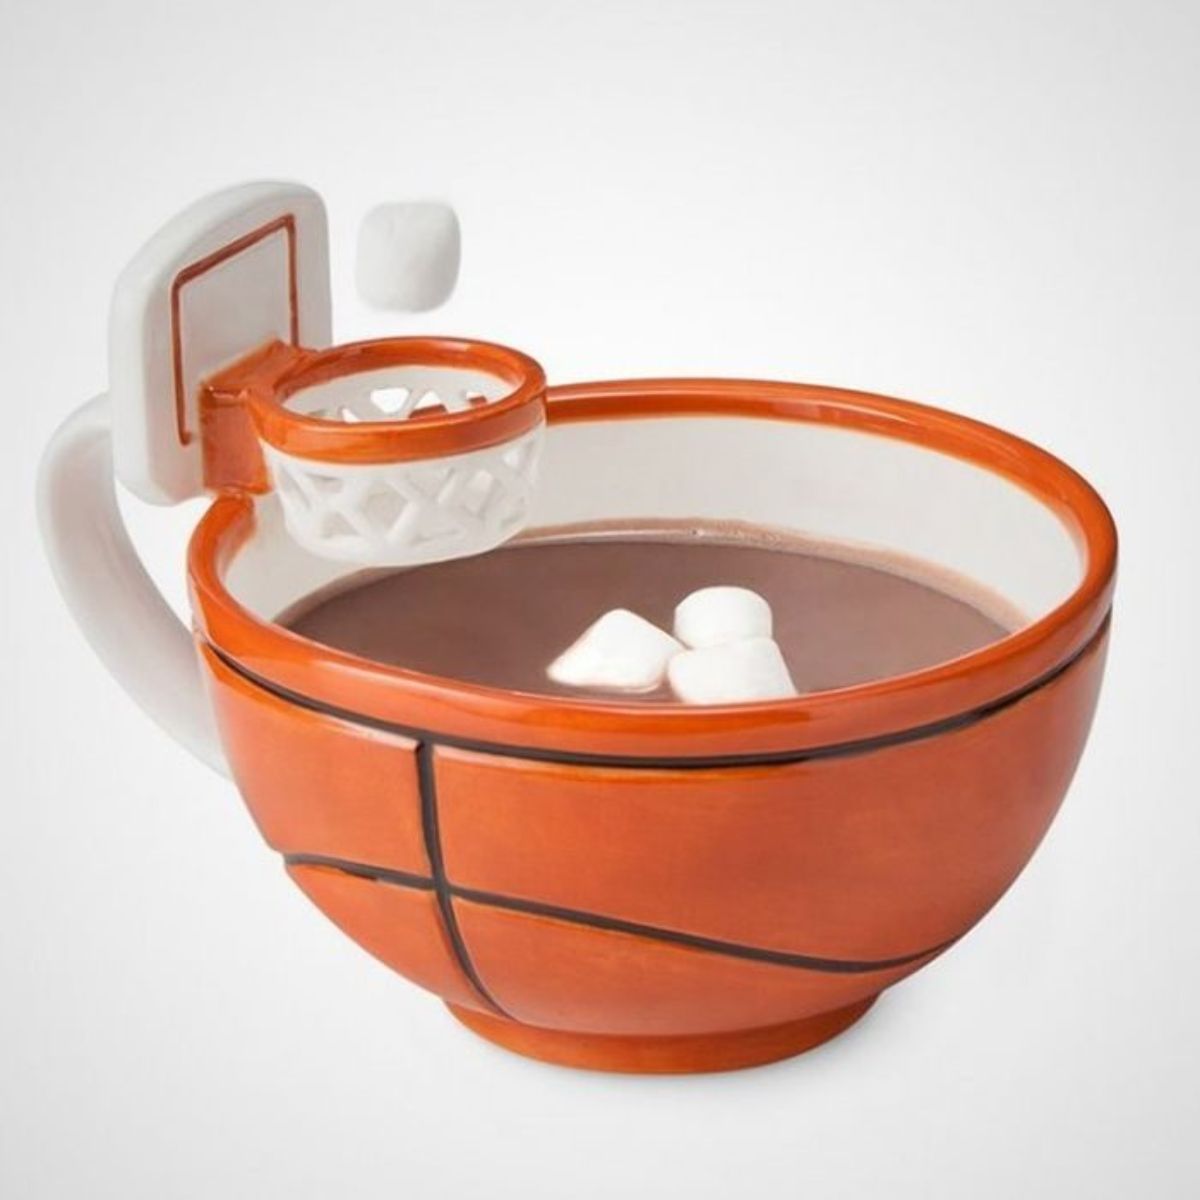 Chiếc cốc dành cho người yêu thích môn thể thao bóng rổ, với màu cam nổi bật cùng những chi tiết bằng gốm sứ cực kỳ sắc sảo và bóng bẩy.